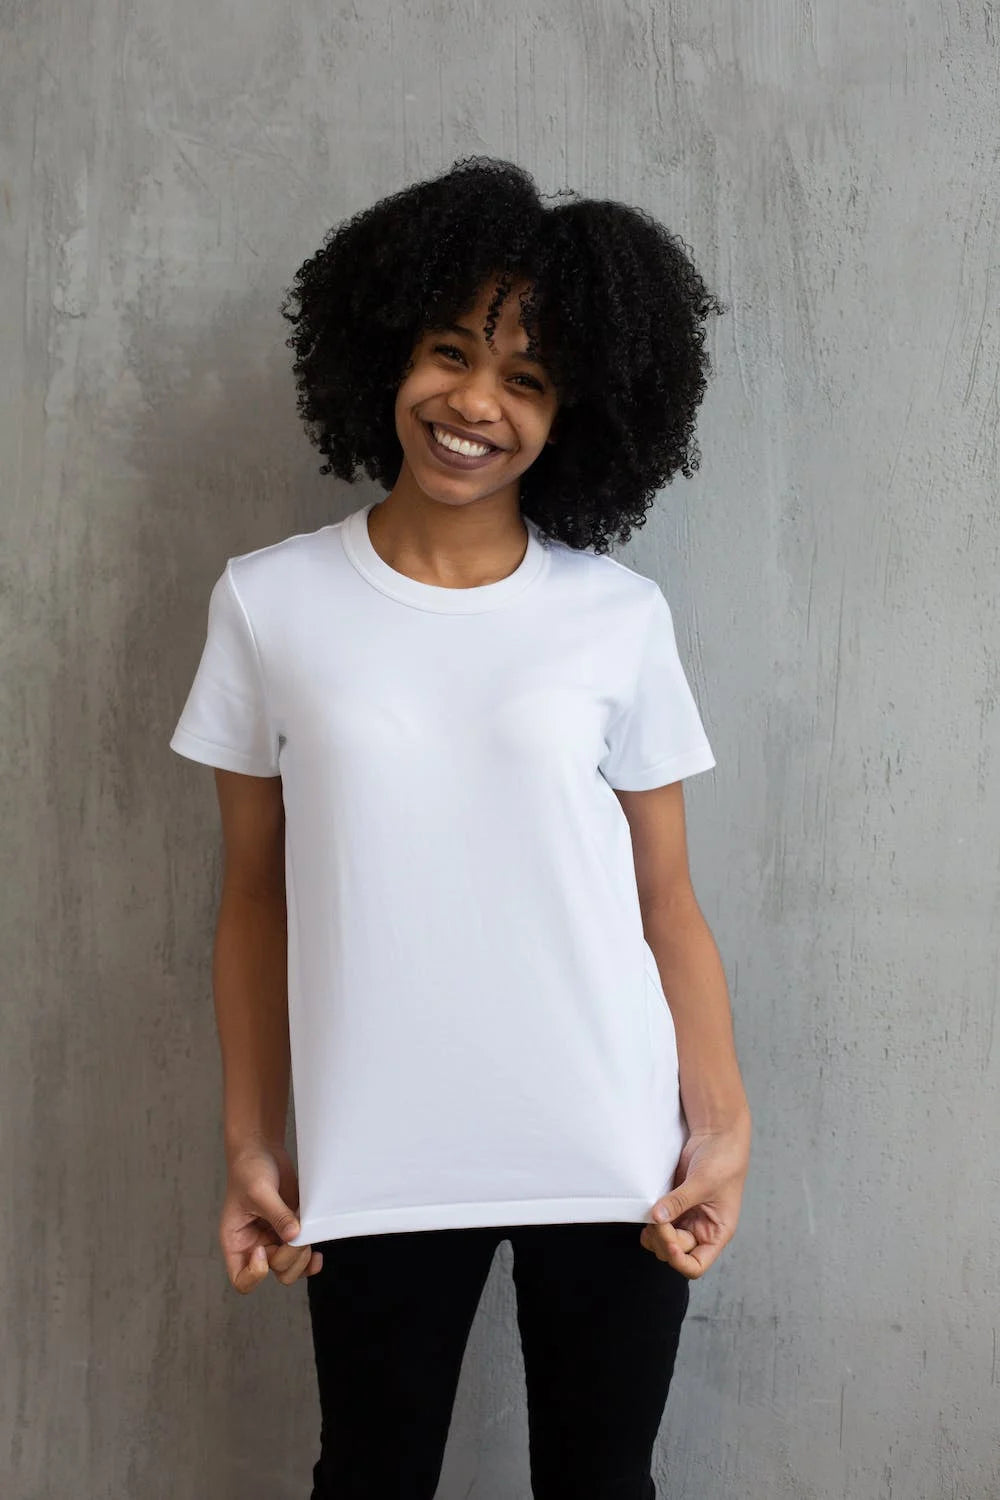 femme souriante portant un t-shirt blanc